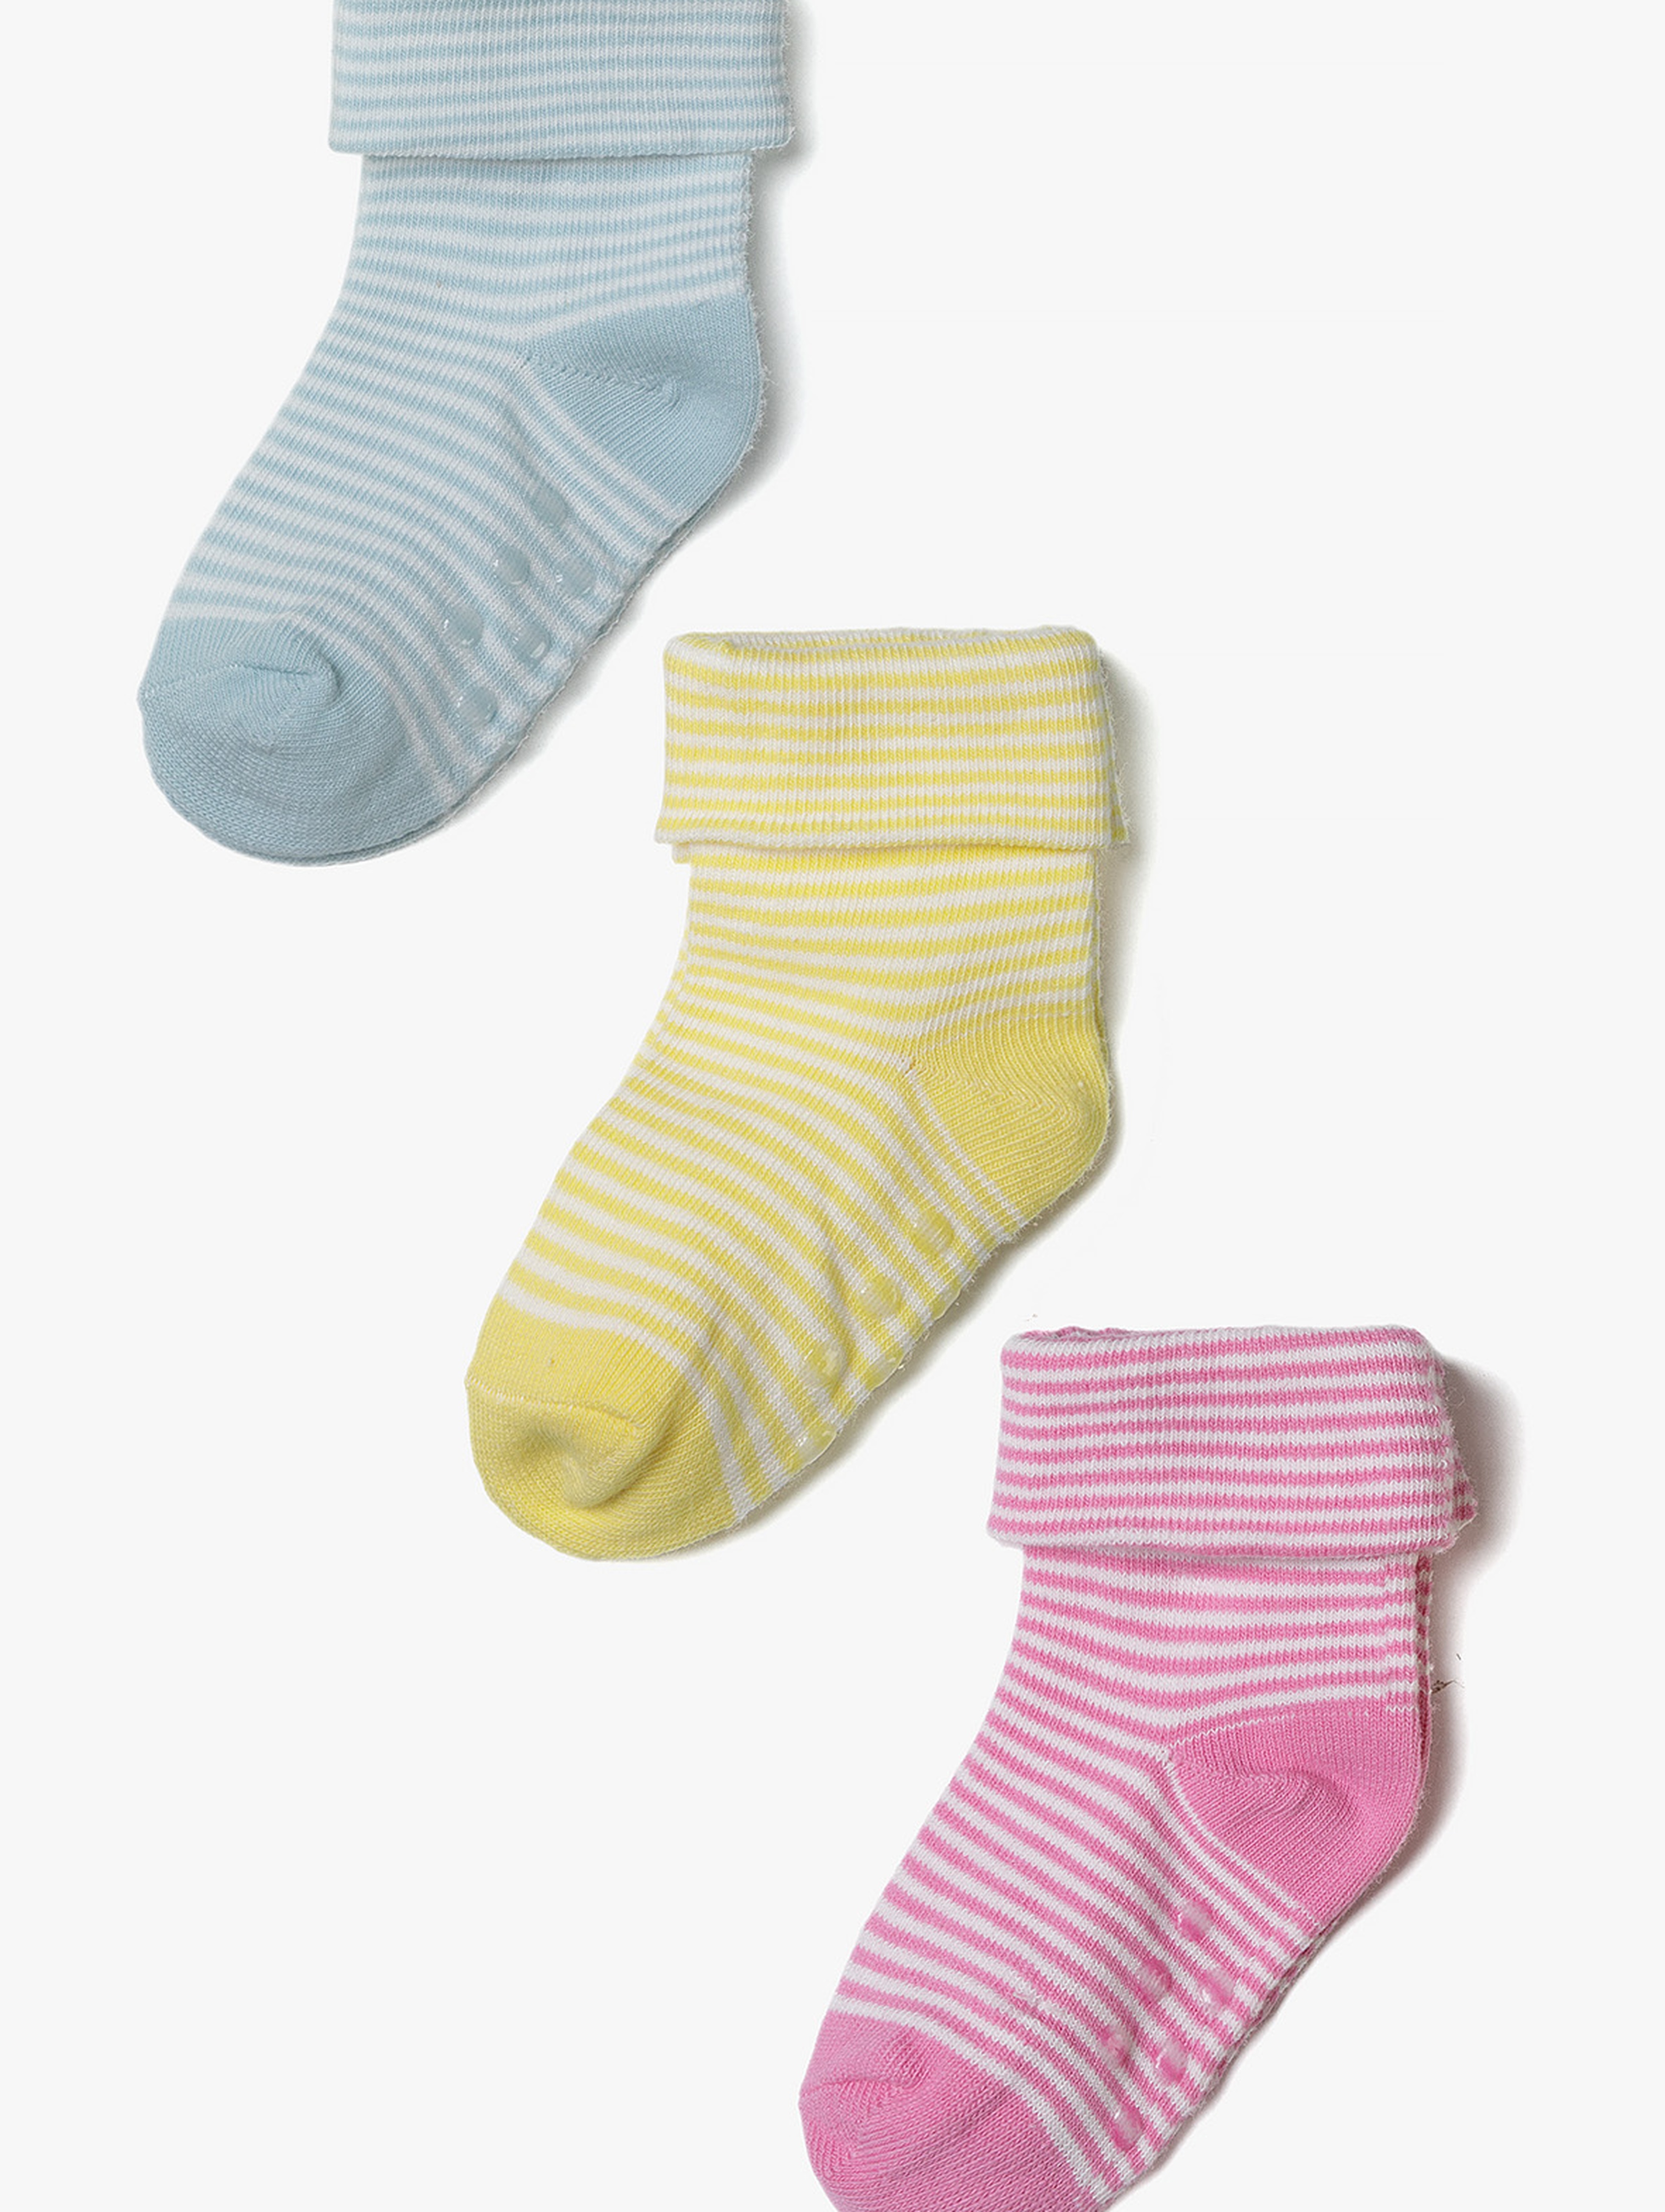 Skarpetki antypoślizgowe dla niemowlaka - 3pak - różowe, żółte, niebieskie